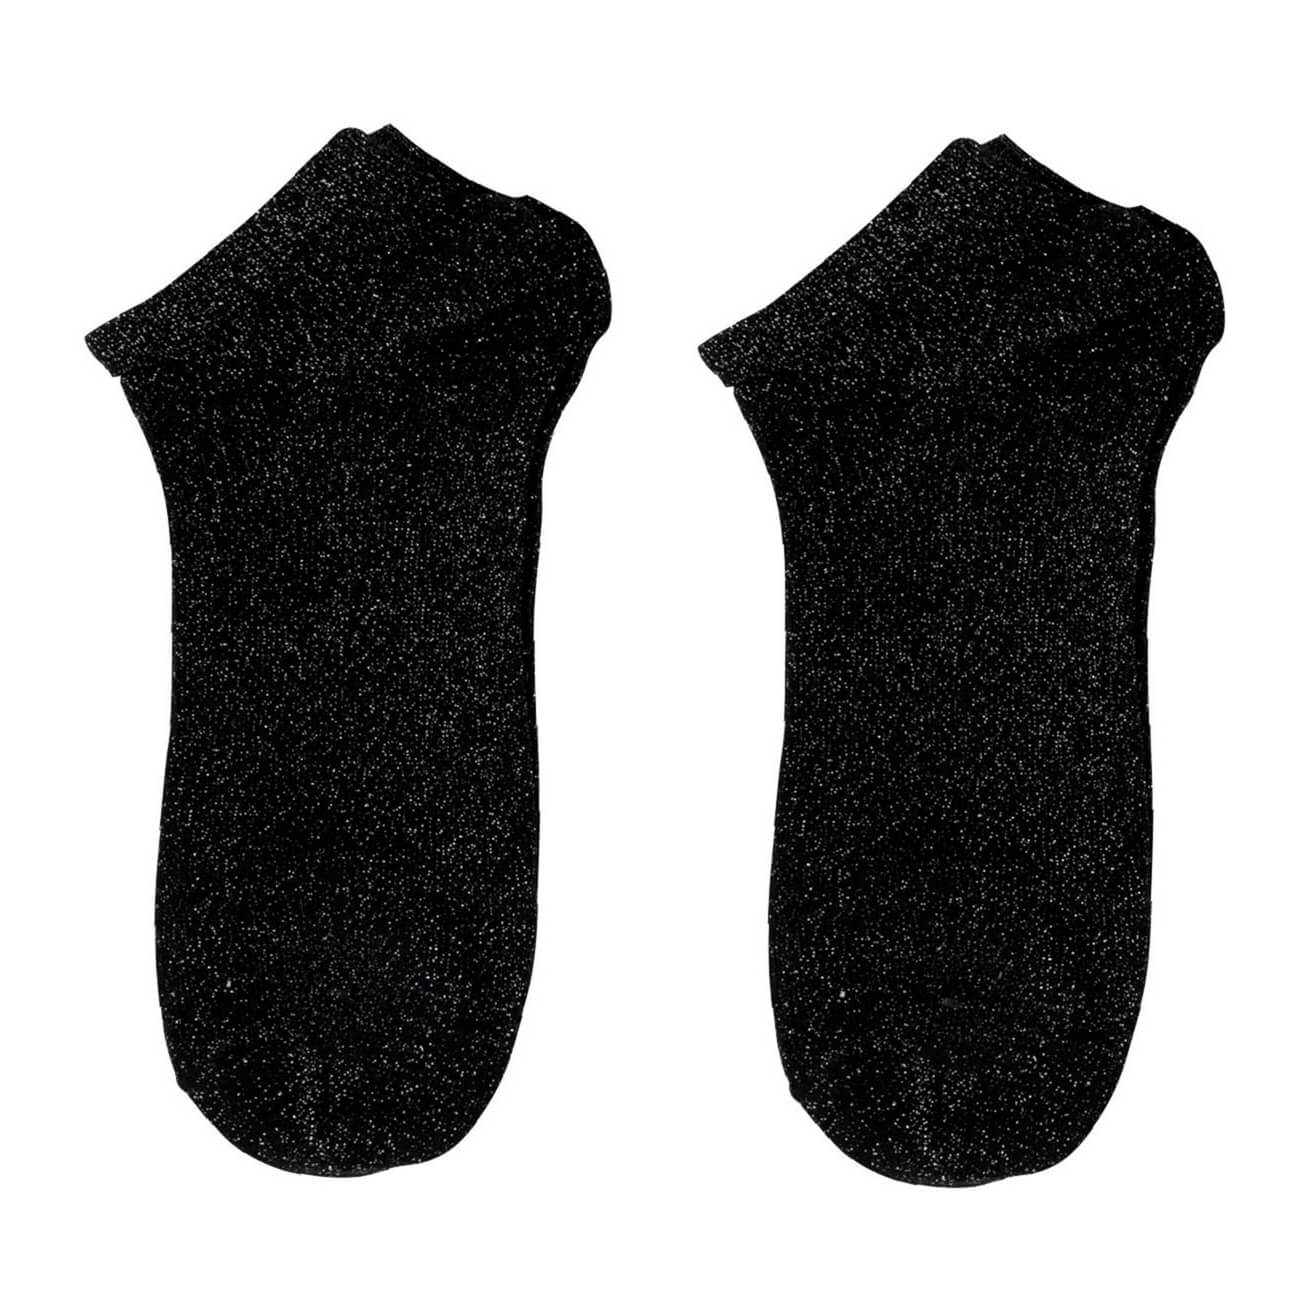 Носки женские, р. 36-38, хлопок/полиэстер, черные, Glint носки женские р 38 41 хлопок полиэстер черные basic